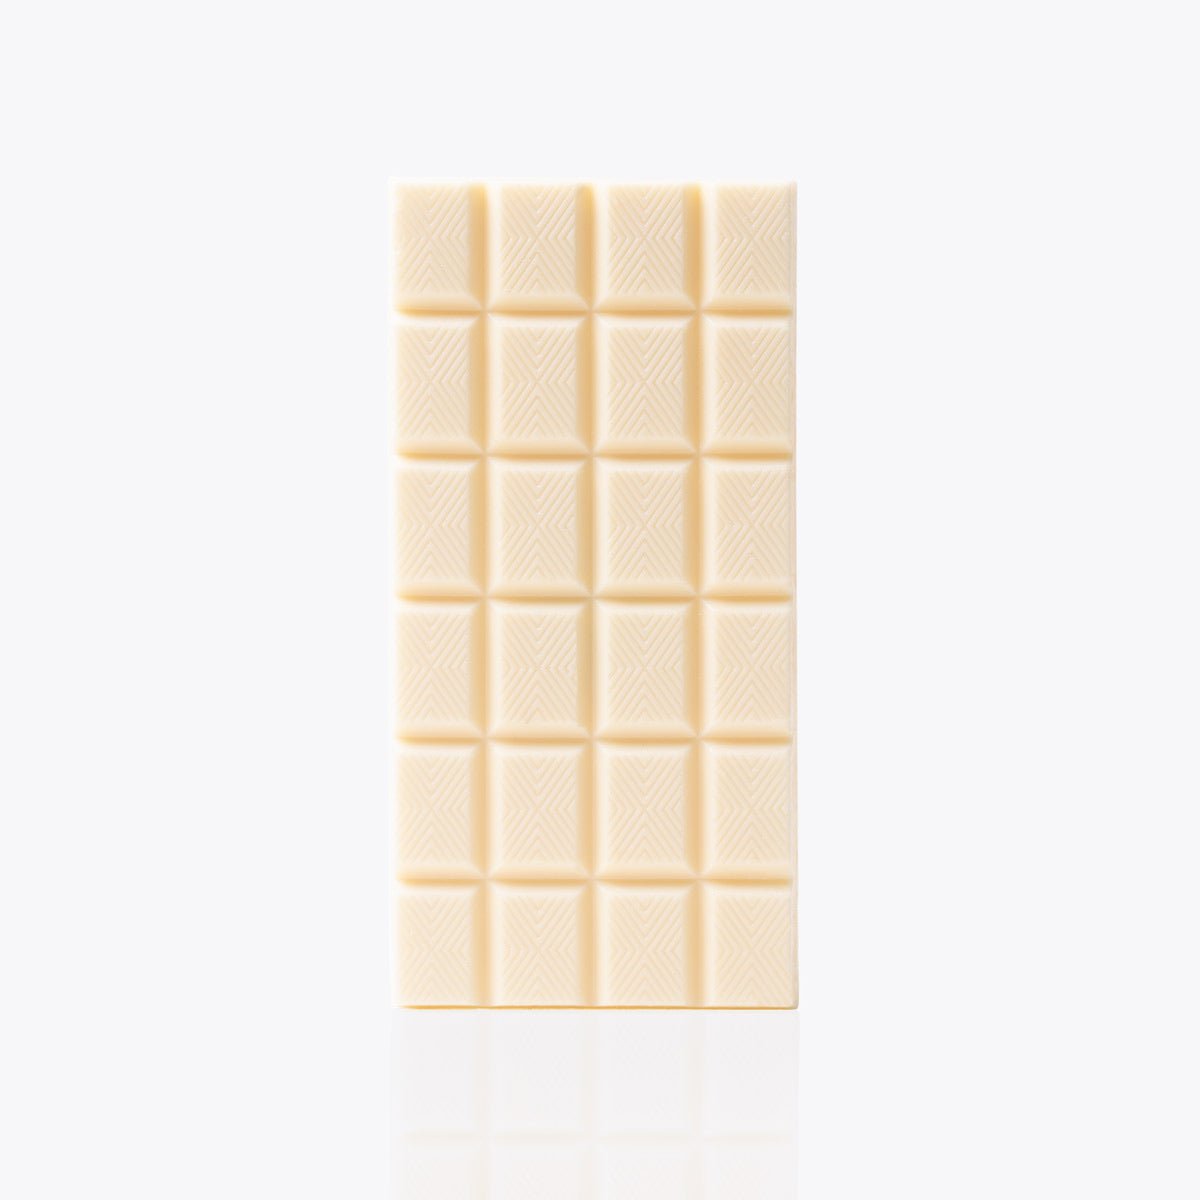 Tableta Chocolate Blanco - 100g - Bombonería Pons - Tabletas Clásicas